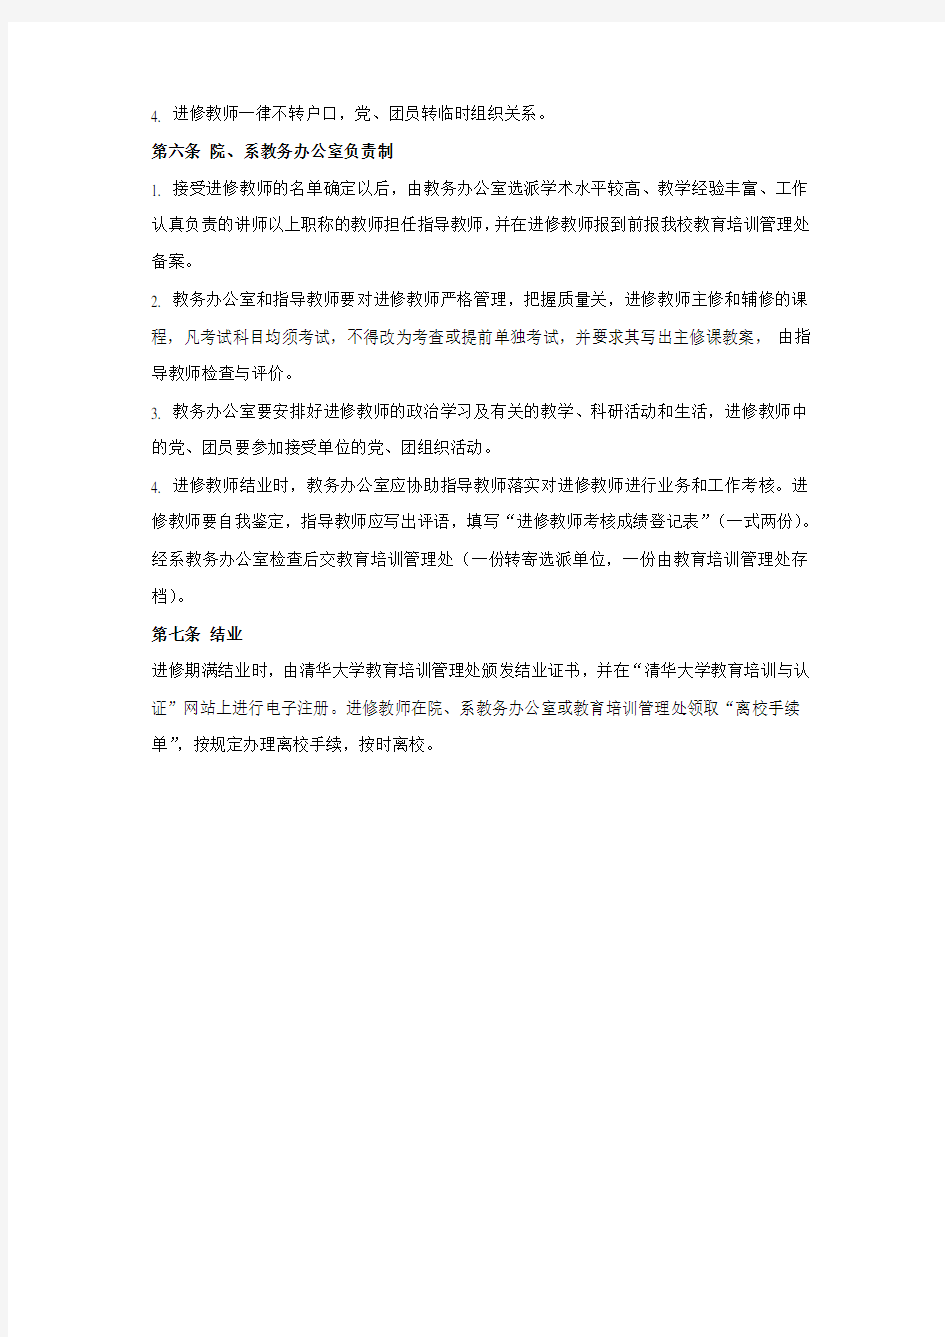 清华大学接受进修教师工作的管理办法